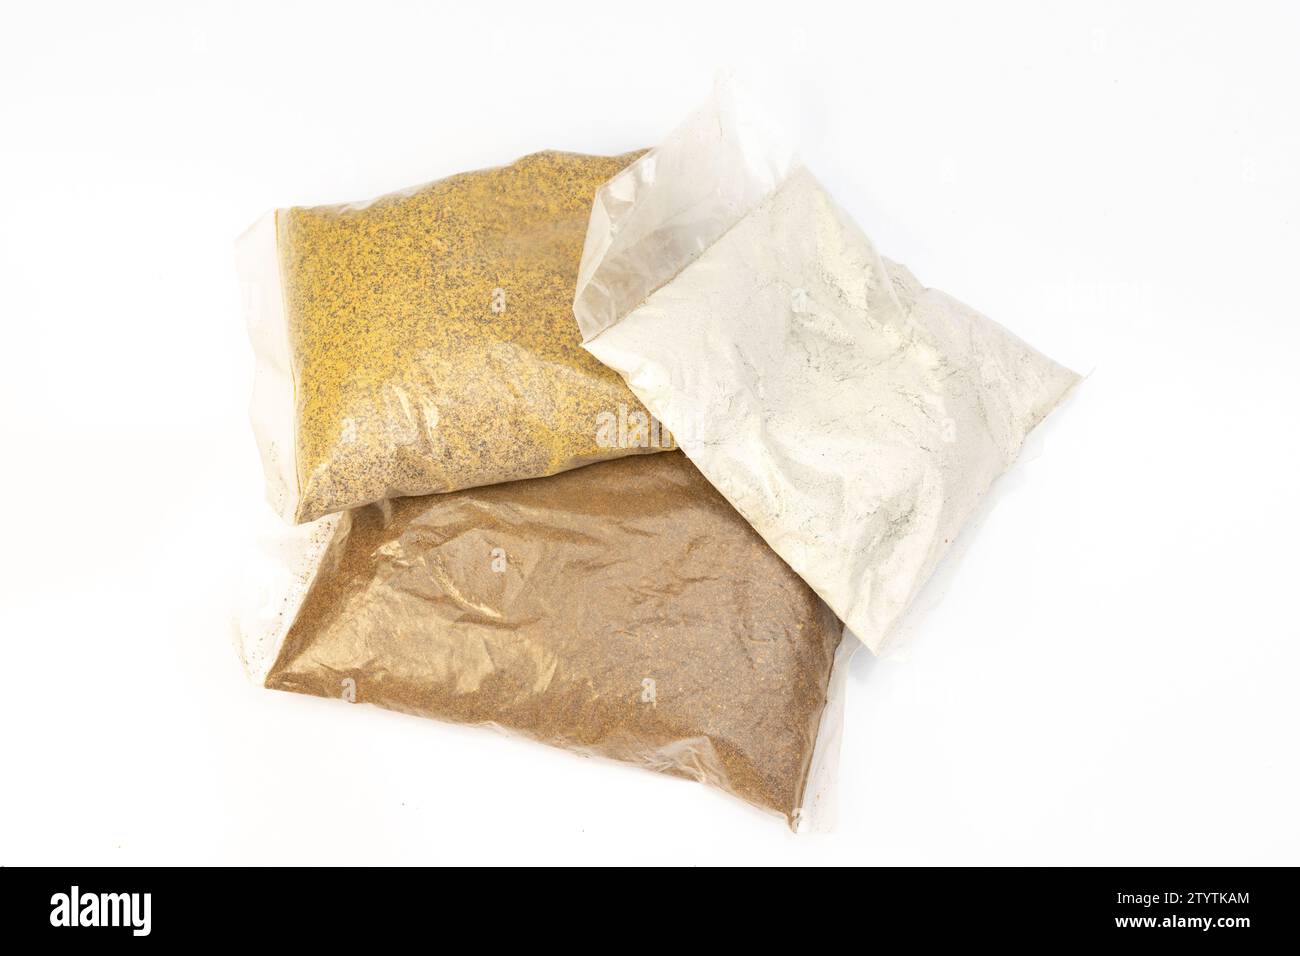 Organic fertilizer bonemeal, mustard cake and neem fertilizers isolated on white background Stock Photo